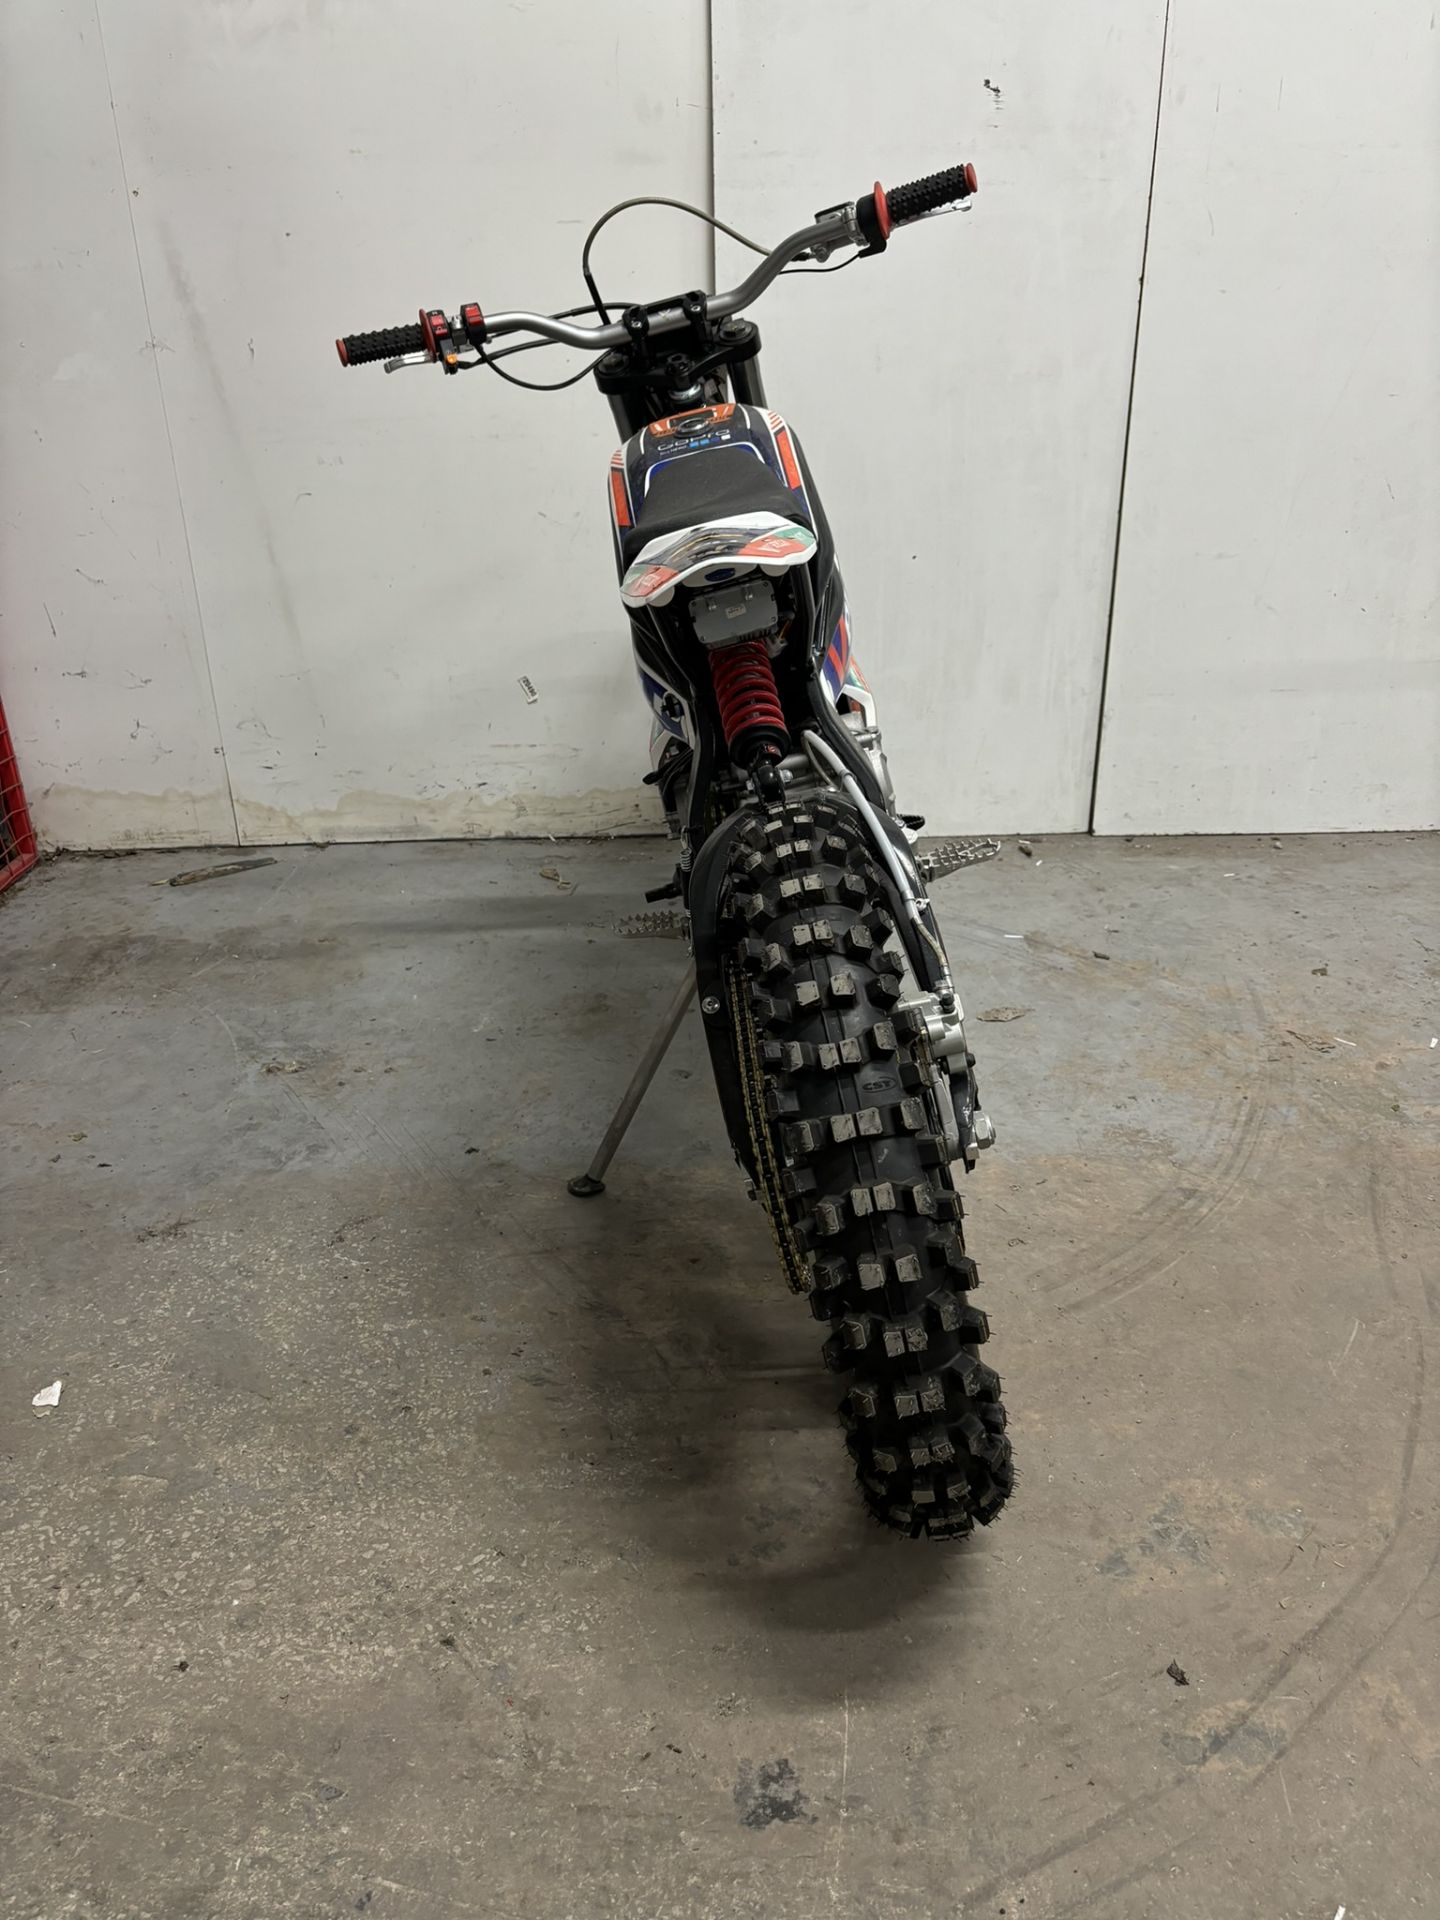 Velimotor VMX12 Electric Motorcycle / Dirt Bike - Image 17 of 24